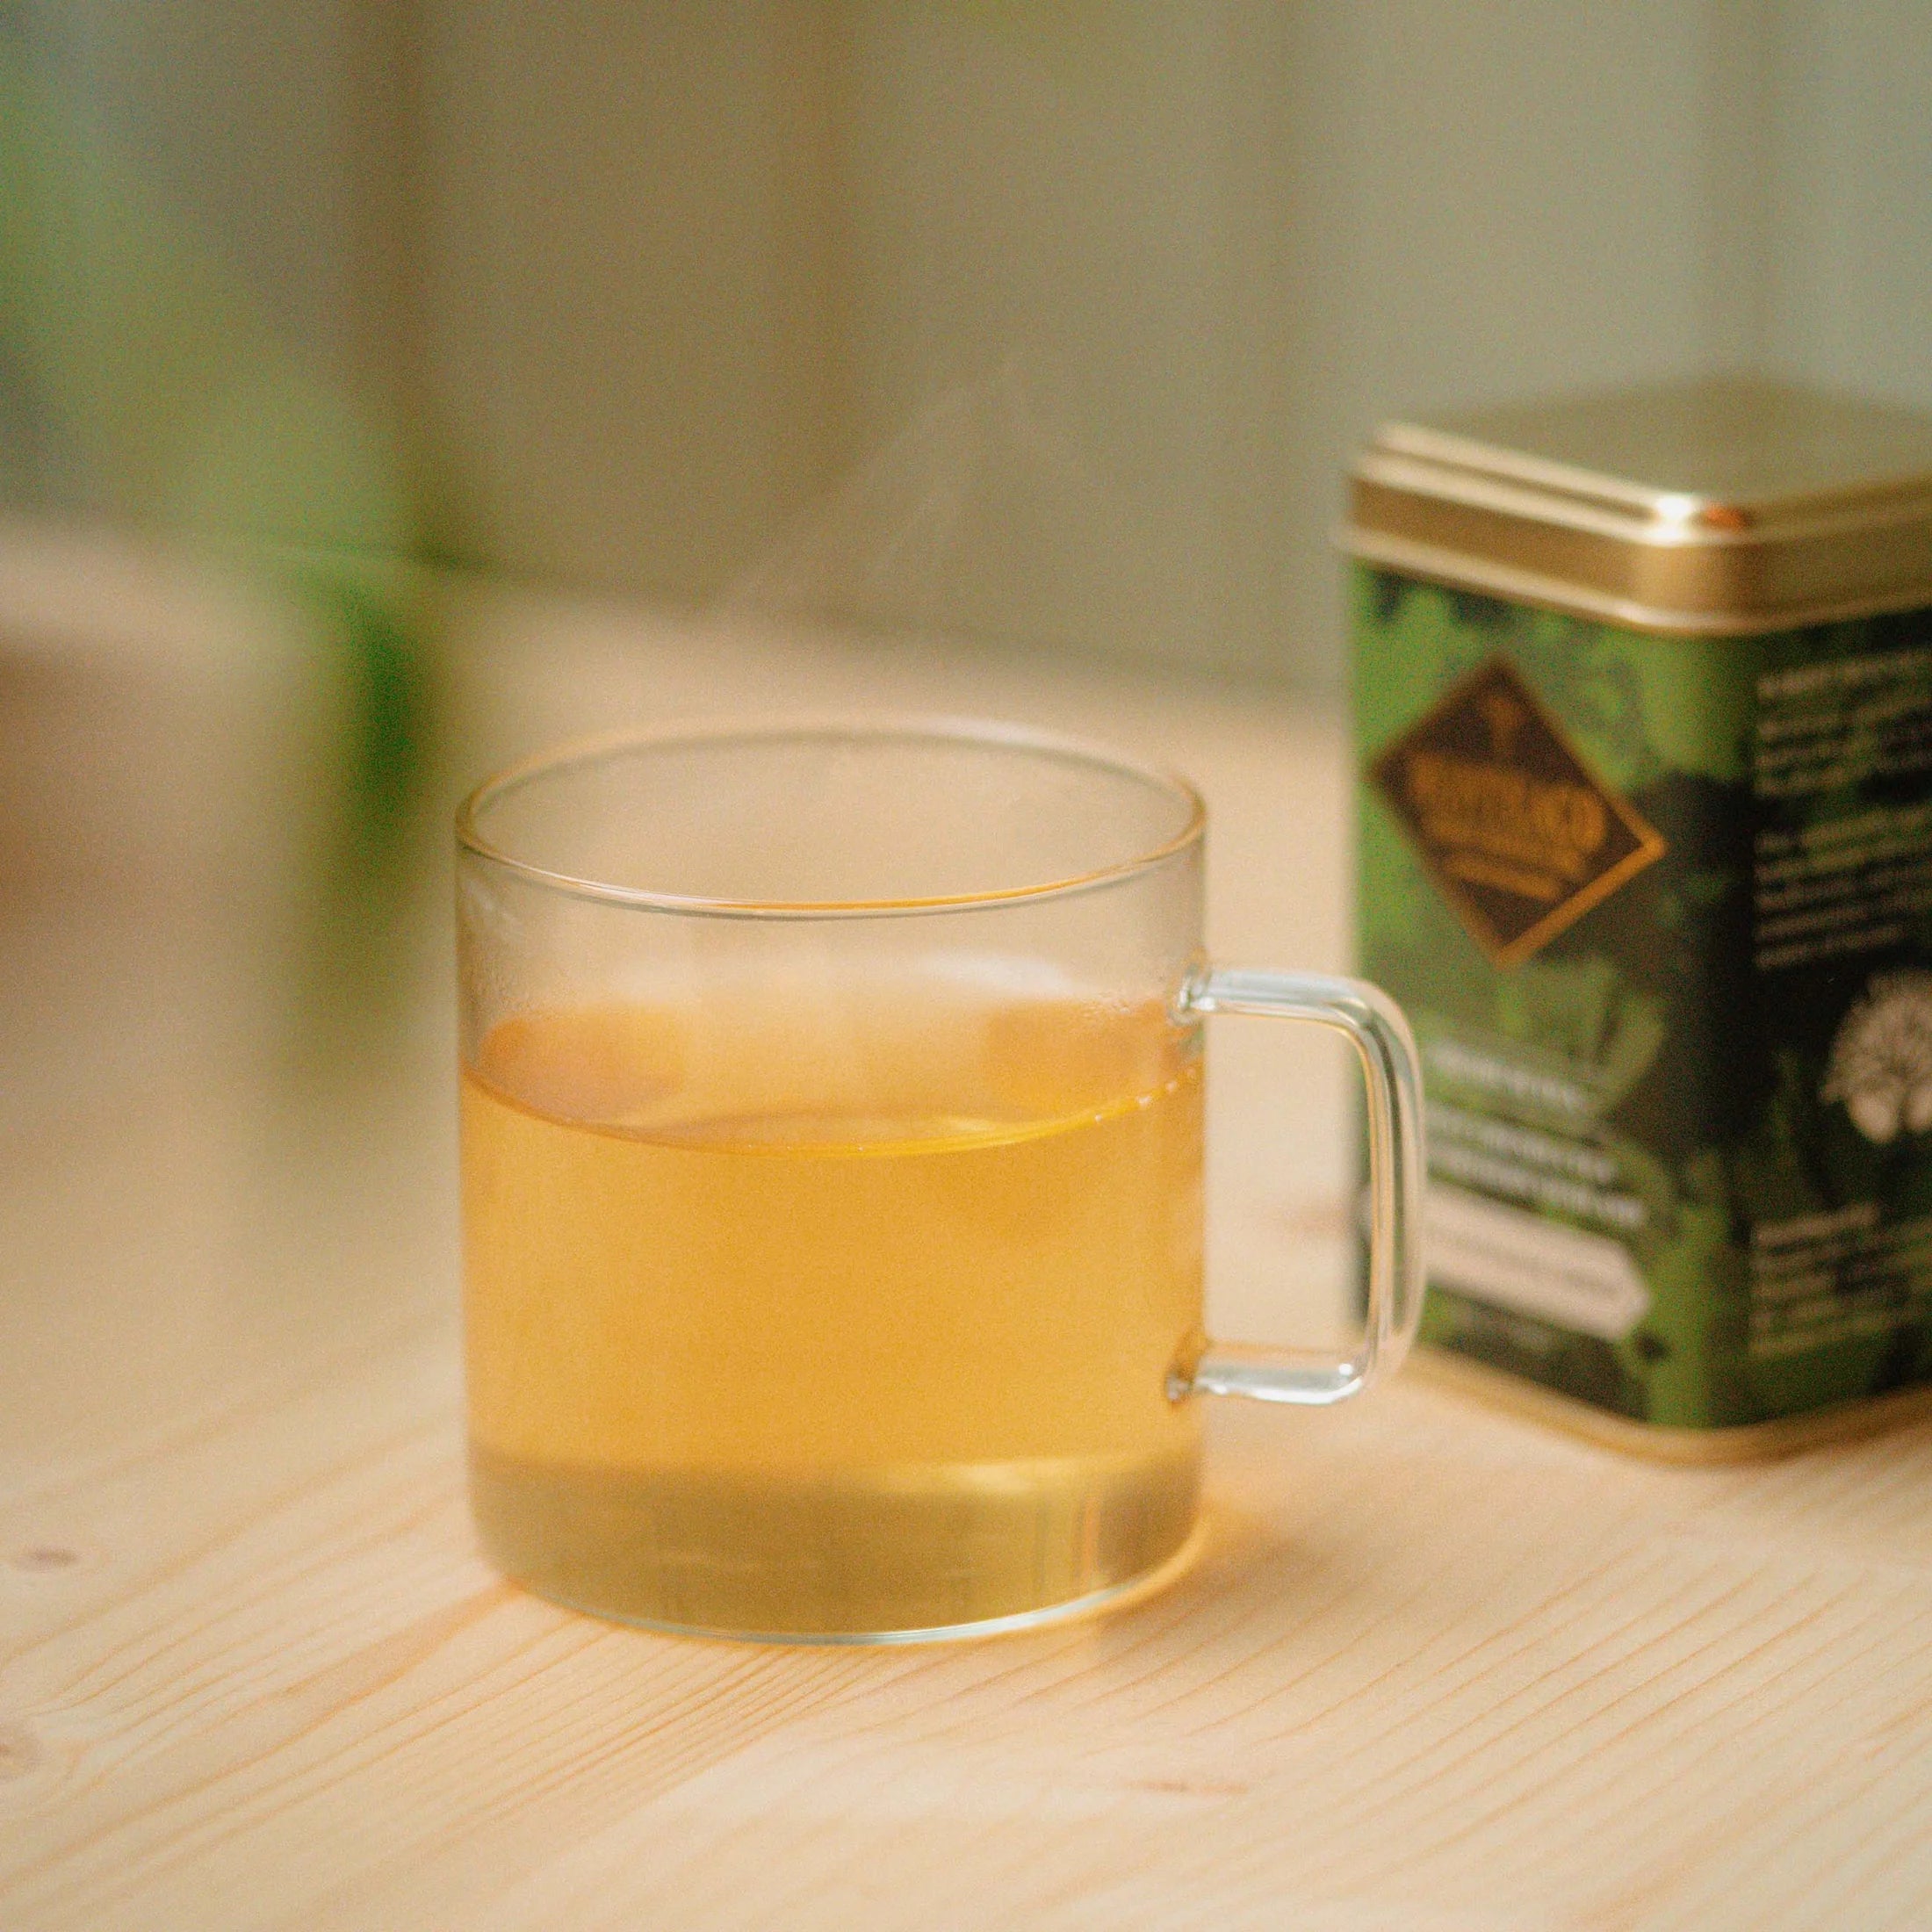 Varm eksklusiv te i gennemsigtig kop - Dhara Aartisanal Green Monteaco